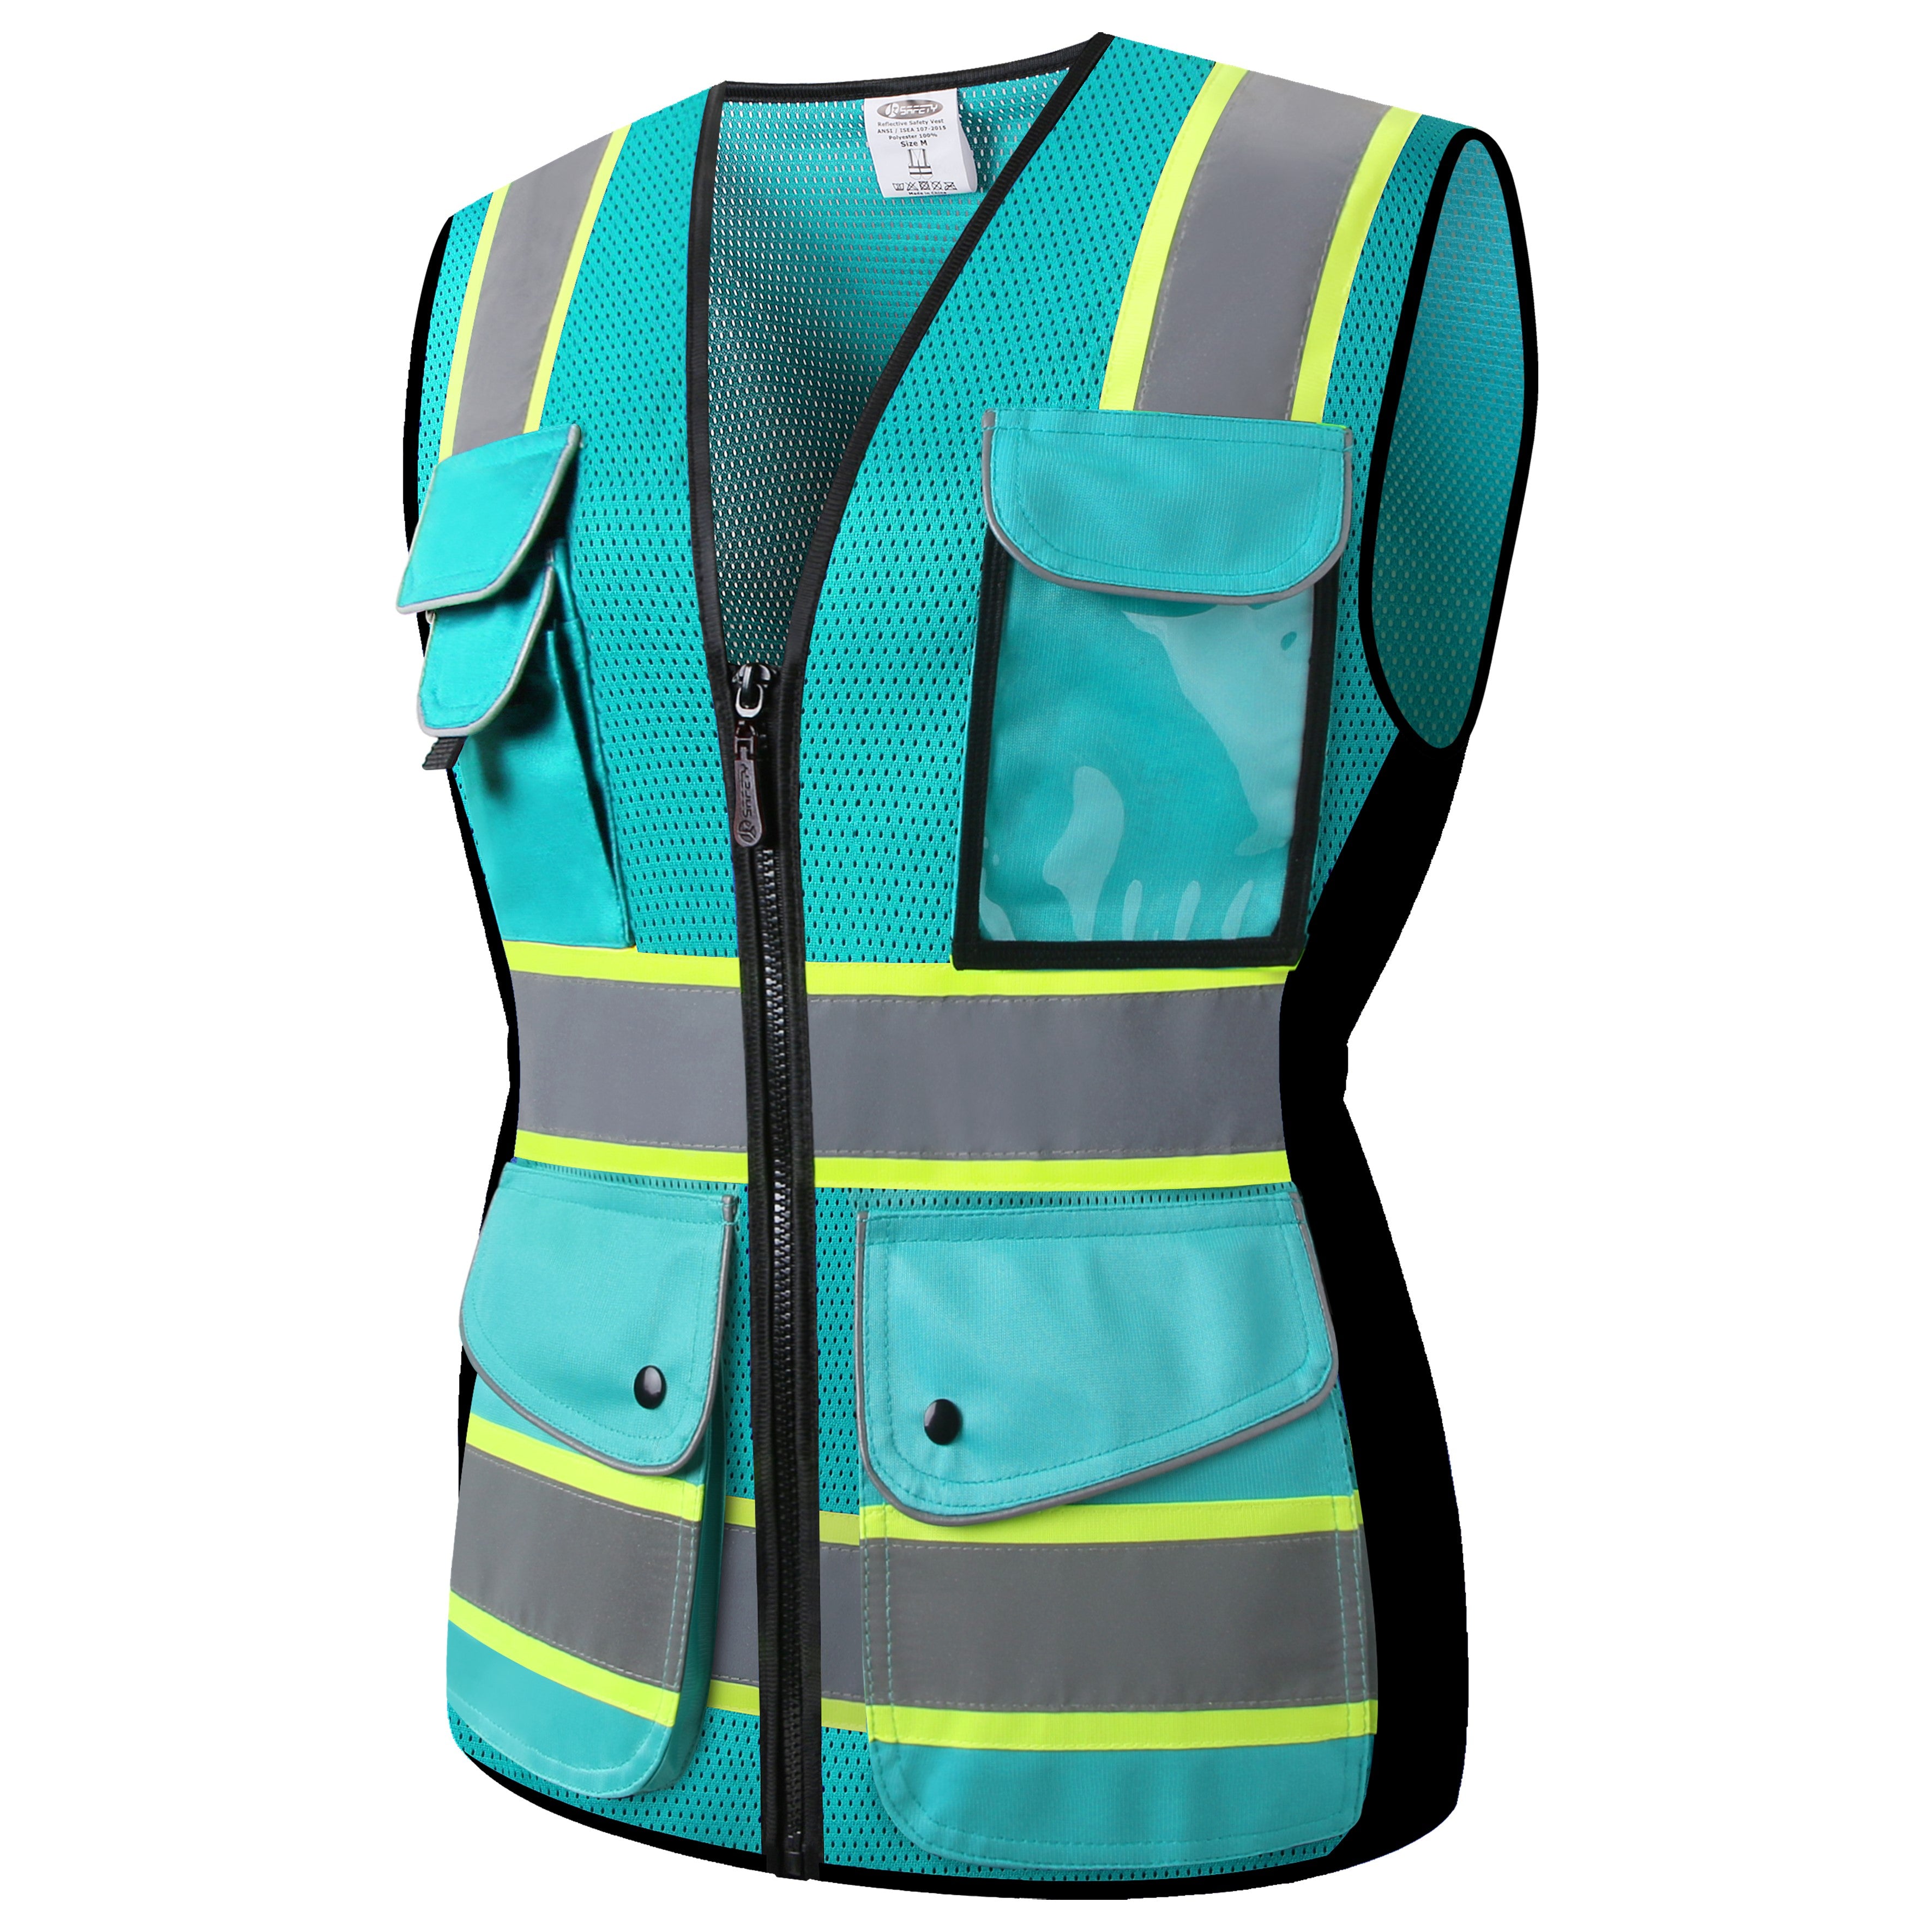 JKSafety Women Hi-Vis Reflective Safety Vest, 9 Pockets